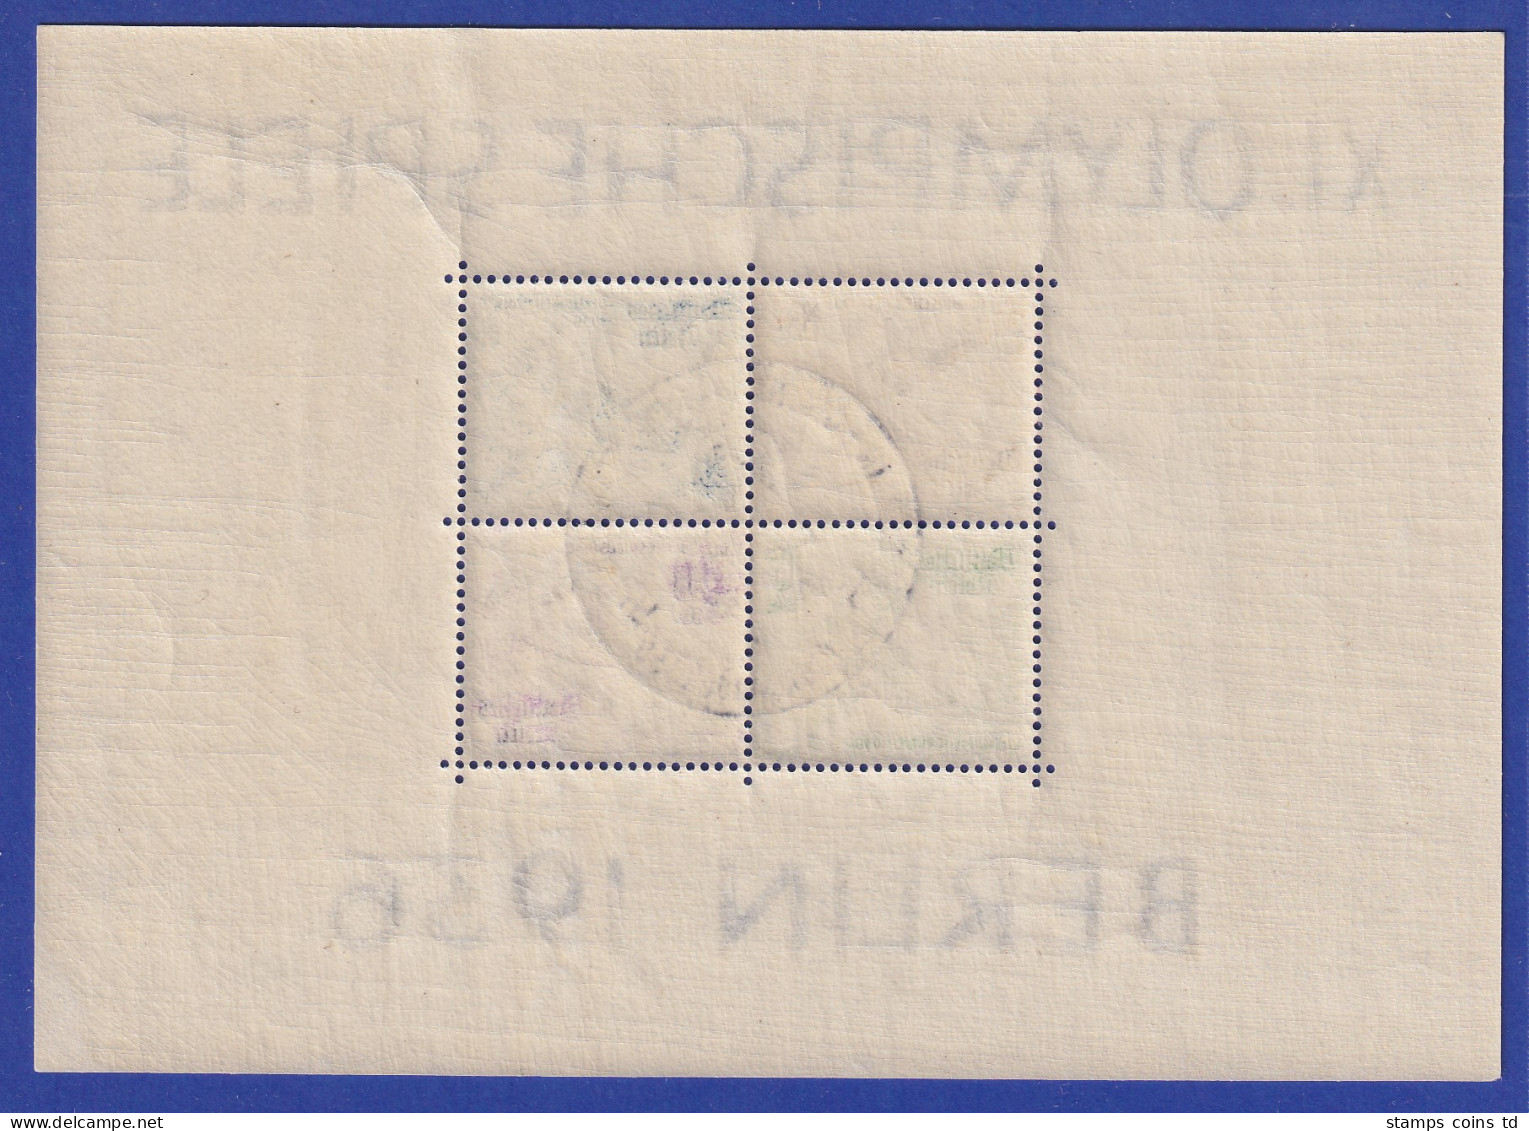 Deutsches Reich 1936 Olympische Spiele Mi.-Nr. Block 5 X Gestempelt - Used Stamps